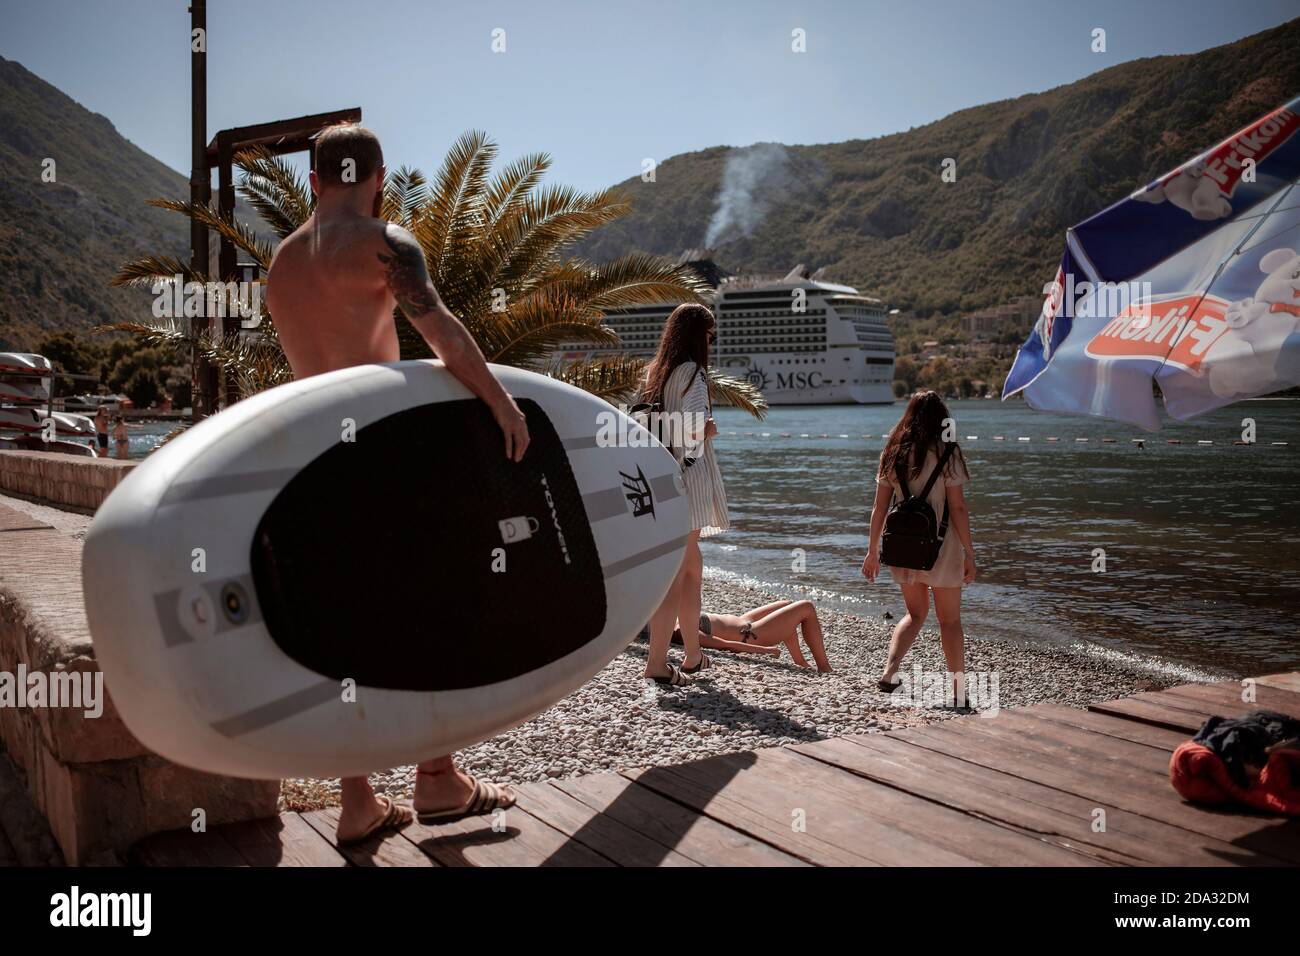 Dobrota, Montenegro, 21 settembre 2019: Giovani che arrivano in spiaggia Foto Stock